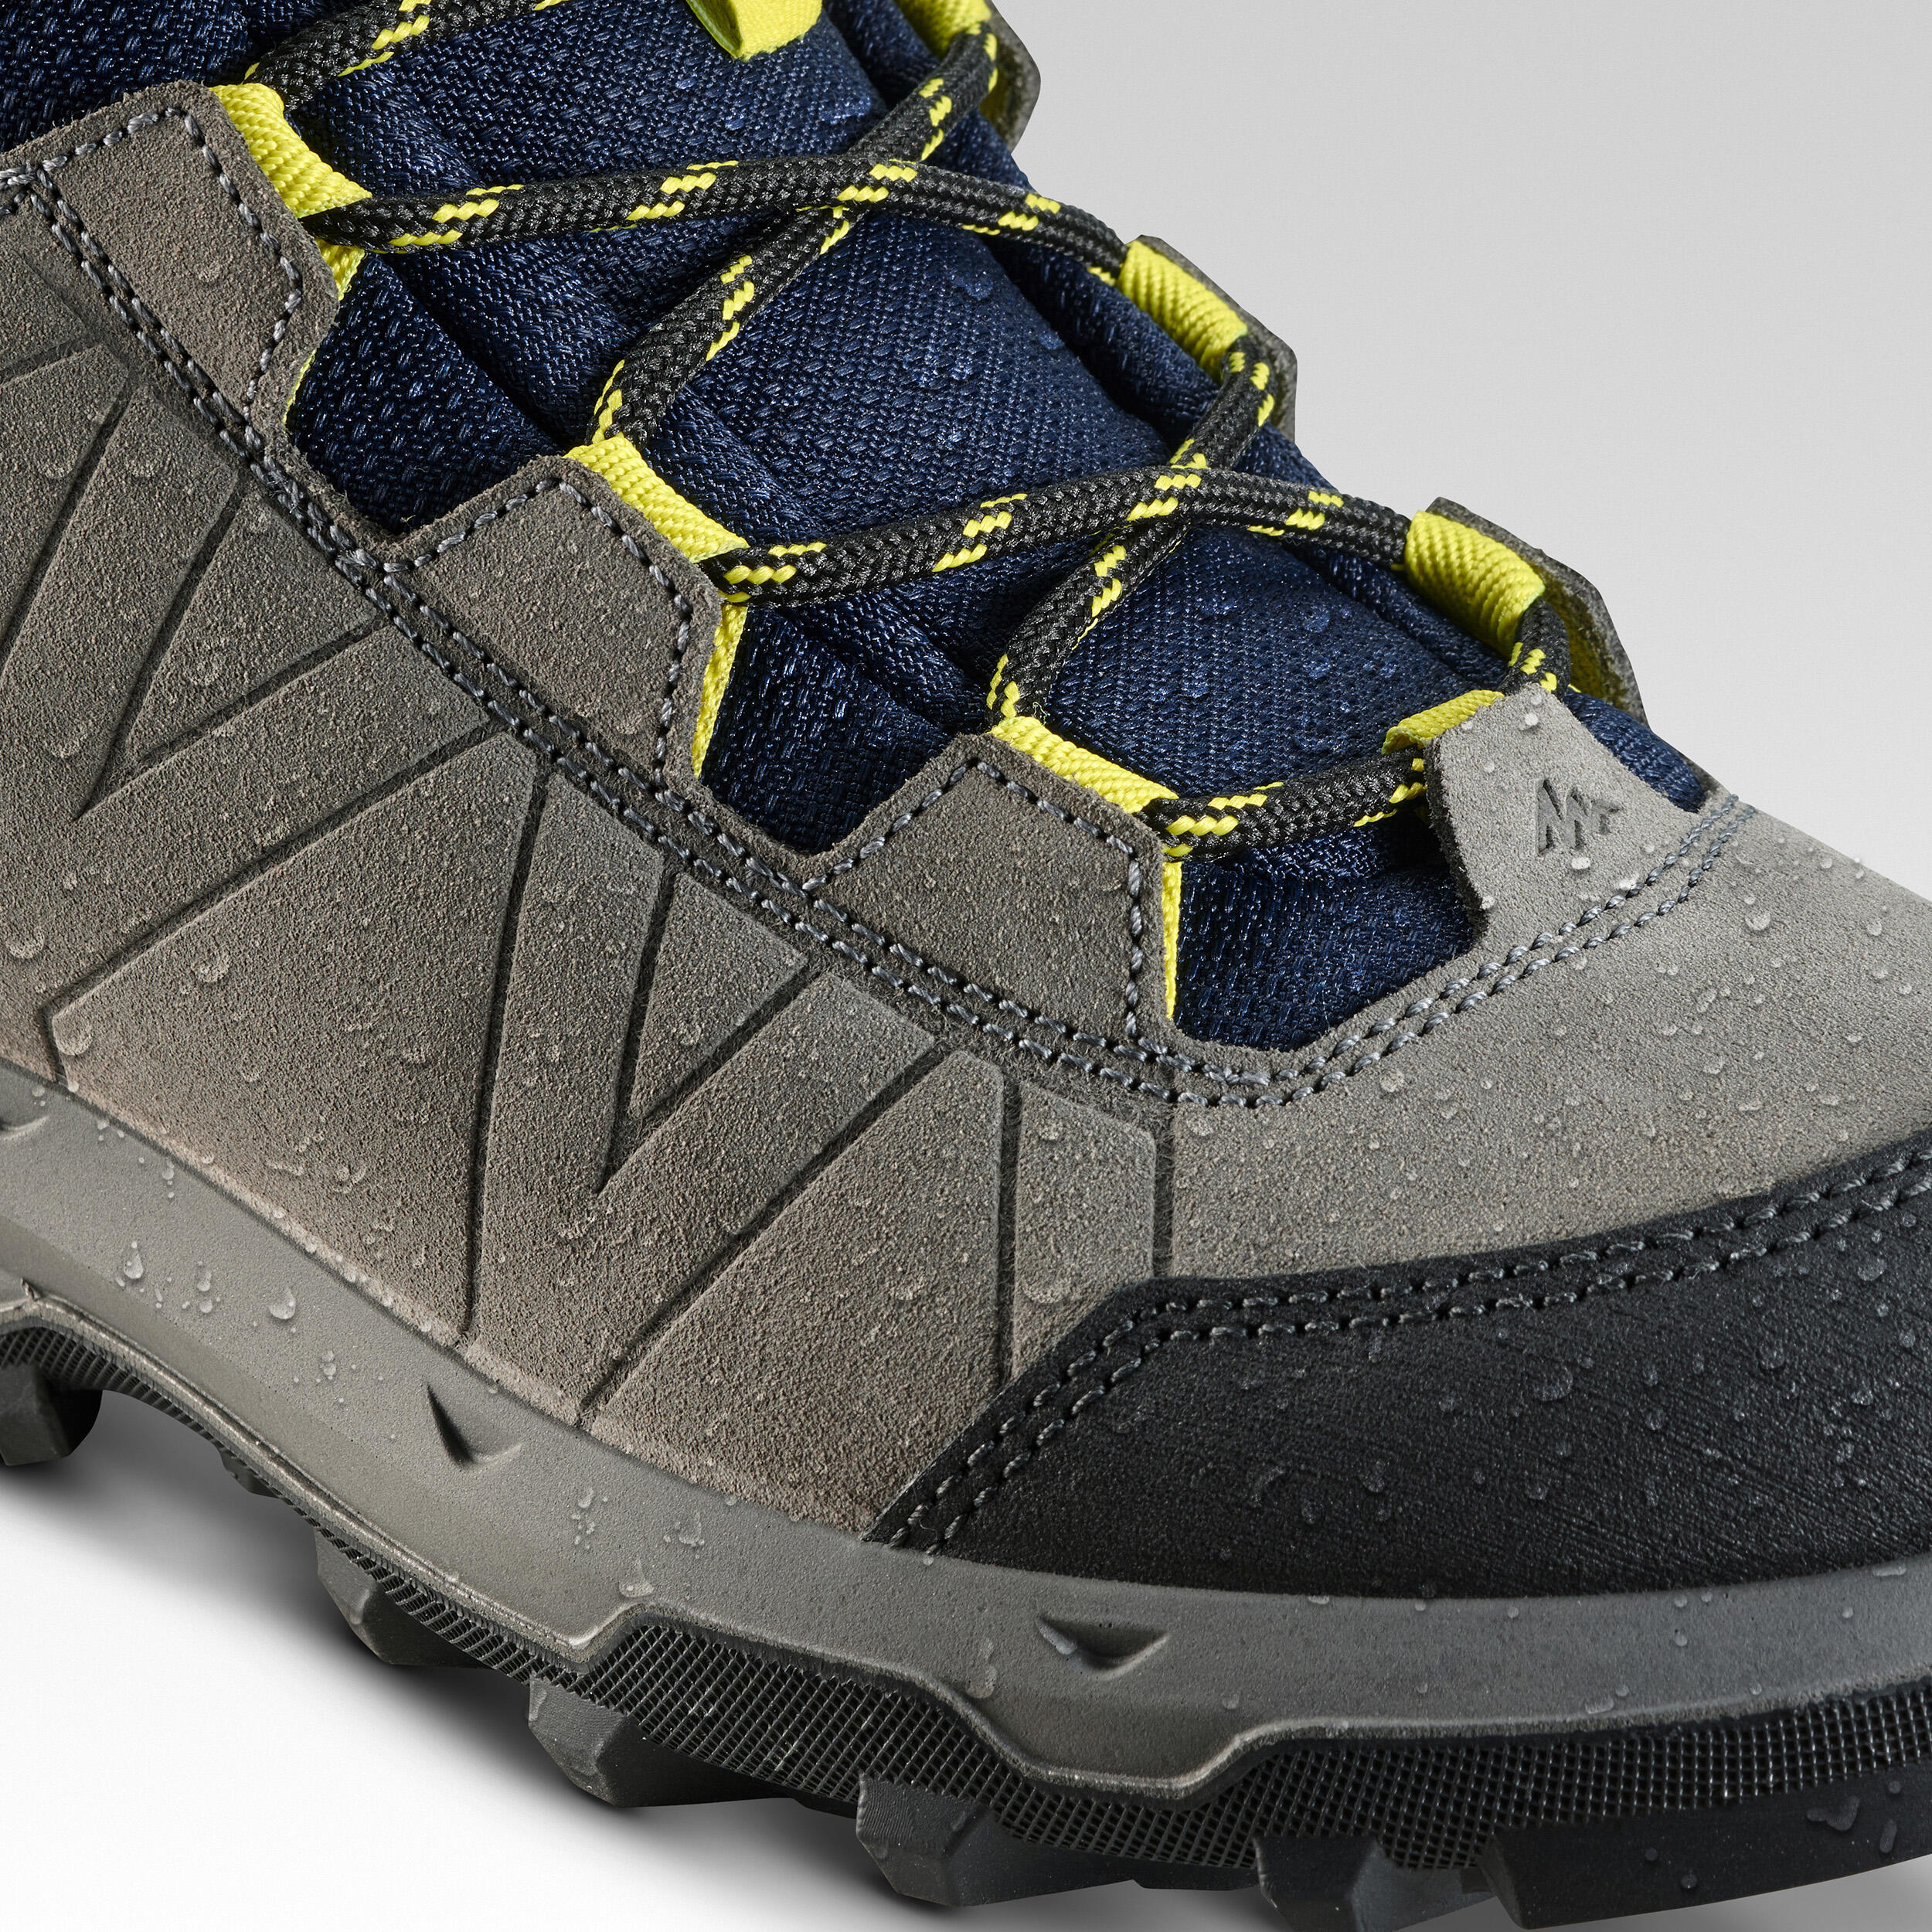 Chaussures de randonnée imperméables enfant – MH 500 - QUECHUA